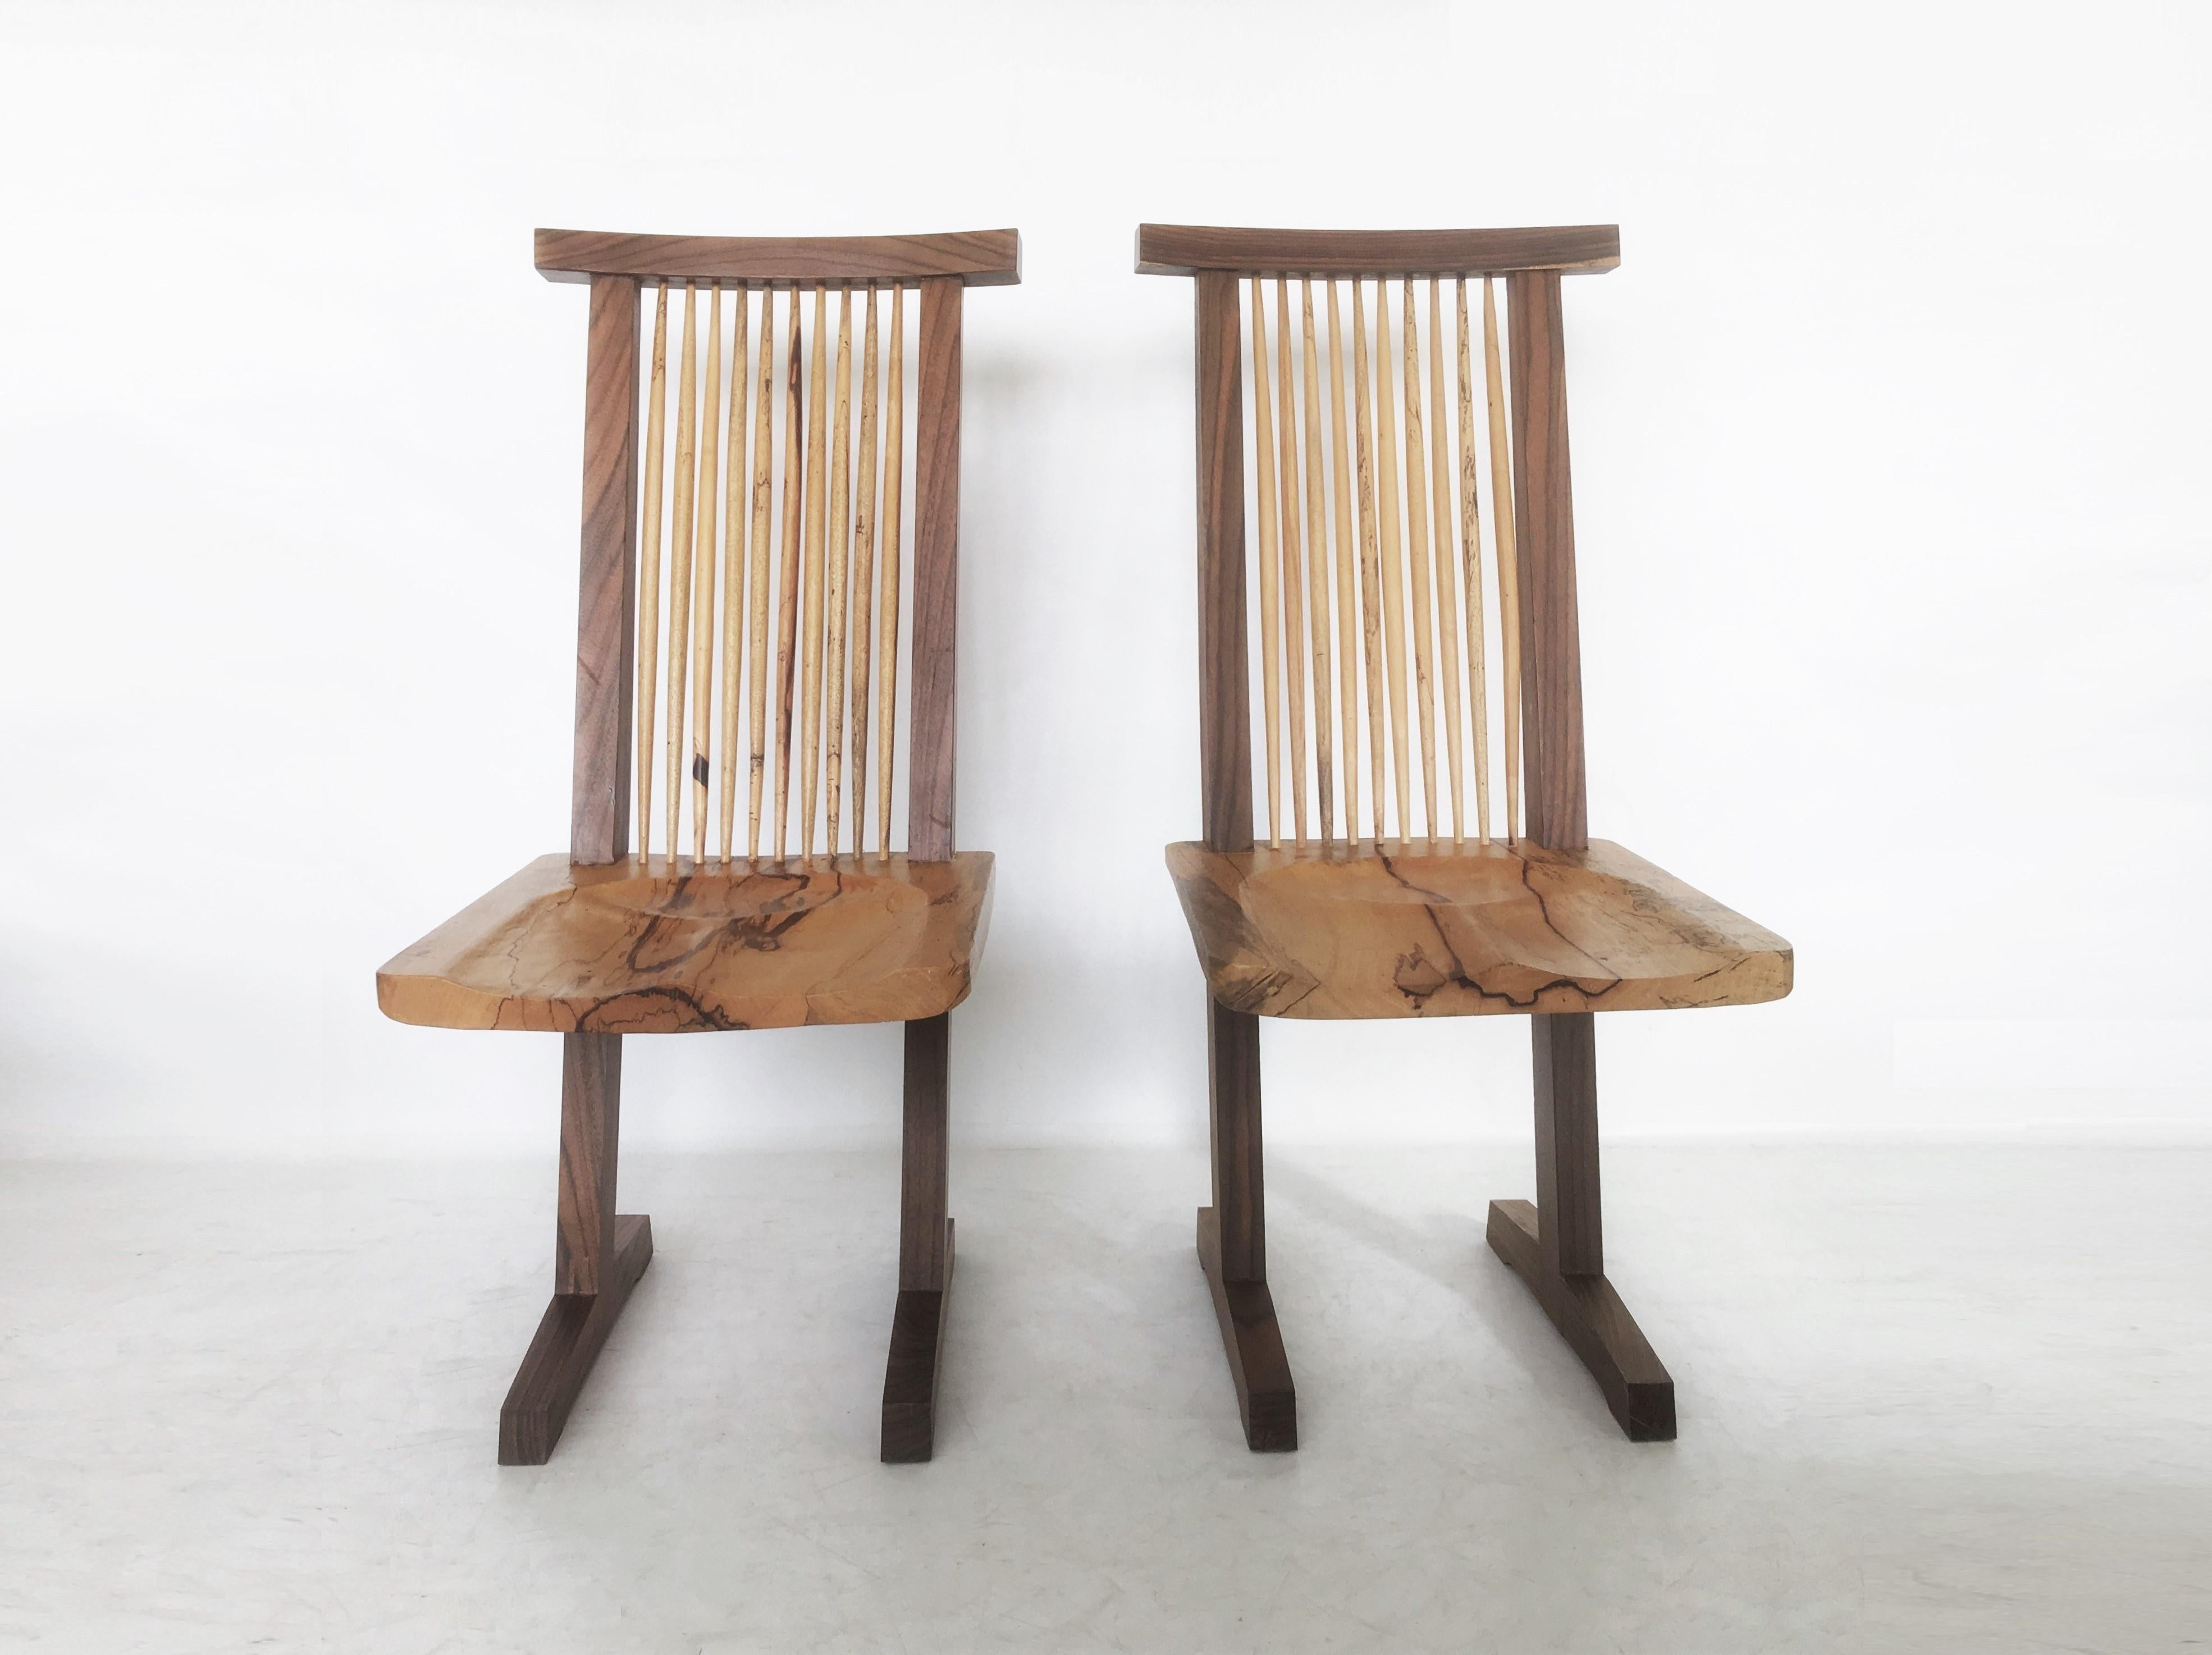 Minimalistische Eleganz! Handgefertigter Stuhl aus Nussbaum und Hickoryholz nach George Nakashima. Die Struktur zeichnet sich durch zwei Beine aus, die sich von den Füßen aus in Form eines Schlittens erstrecken und als Stützen dienen, die einen